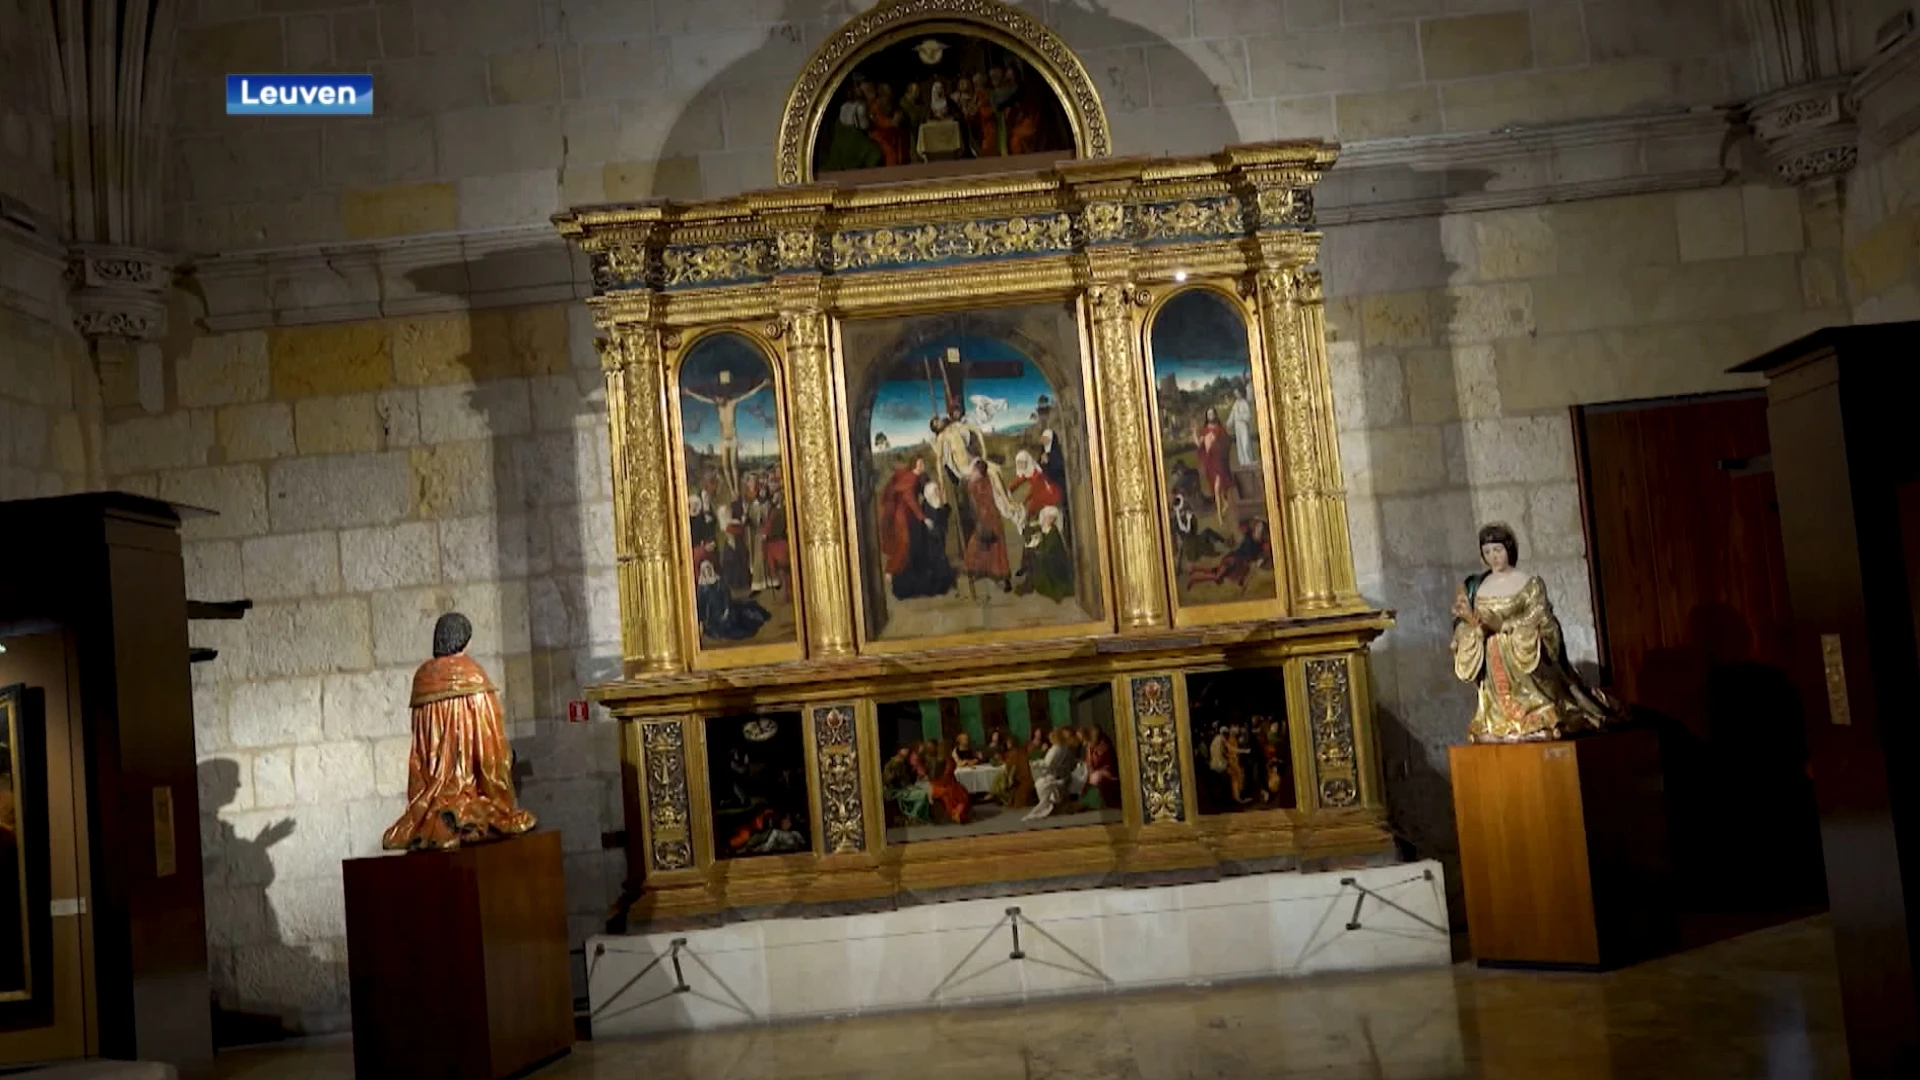 Na meer dan 500 jaar in de Koninklijke kapel in Granada, is de Triptiek van de Kruisafnemening van Dieric Bouts vanaf oktober te zien in M Leuven